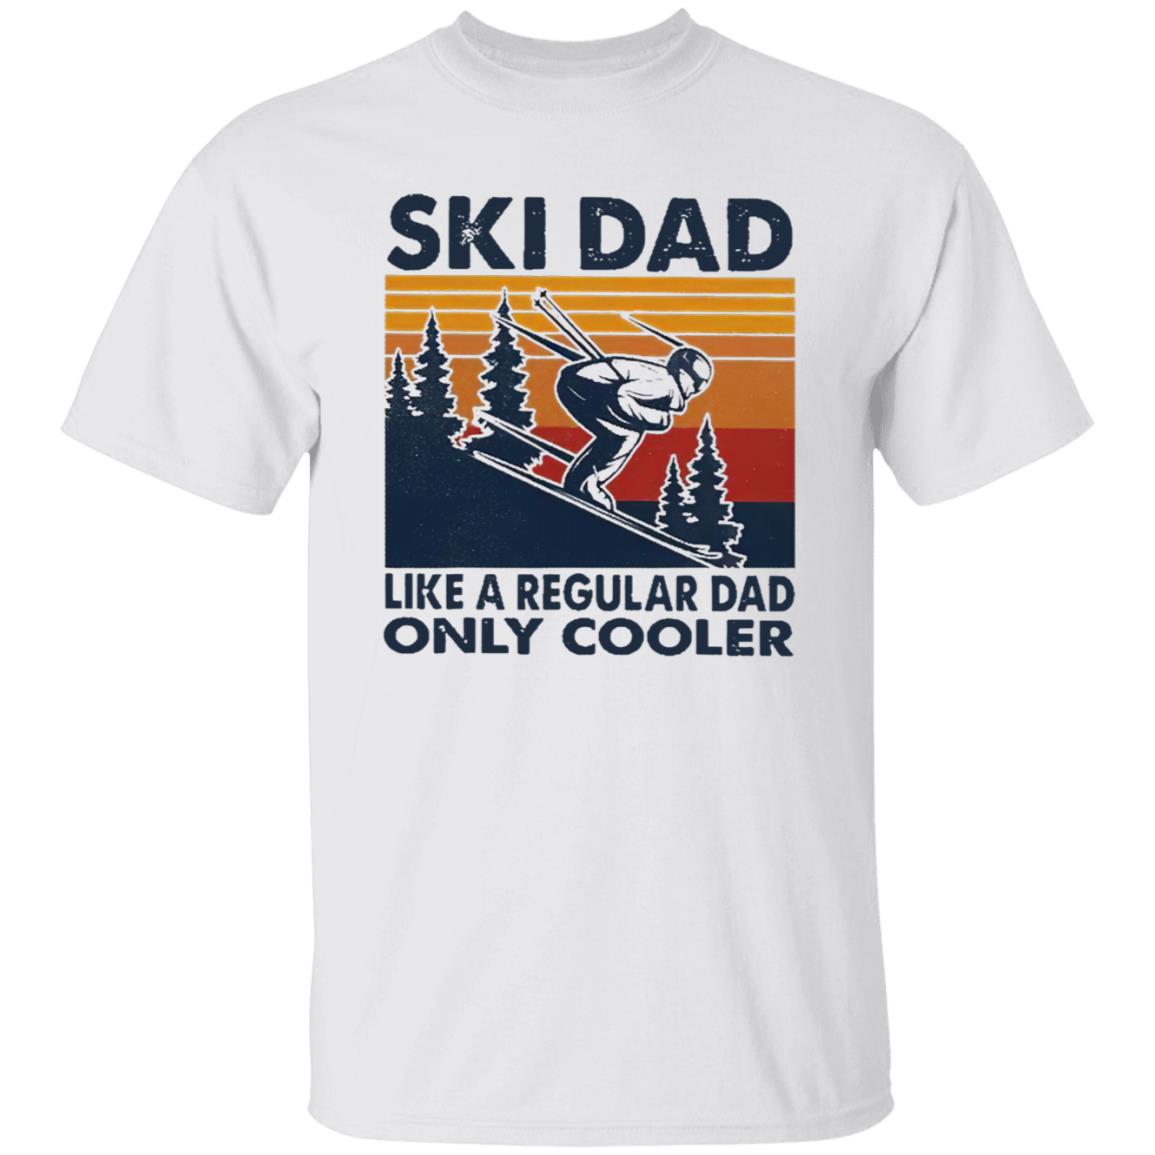 Ski dad like a regular dad only cooler vintage shirt